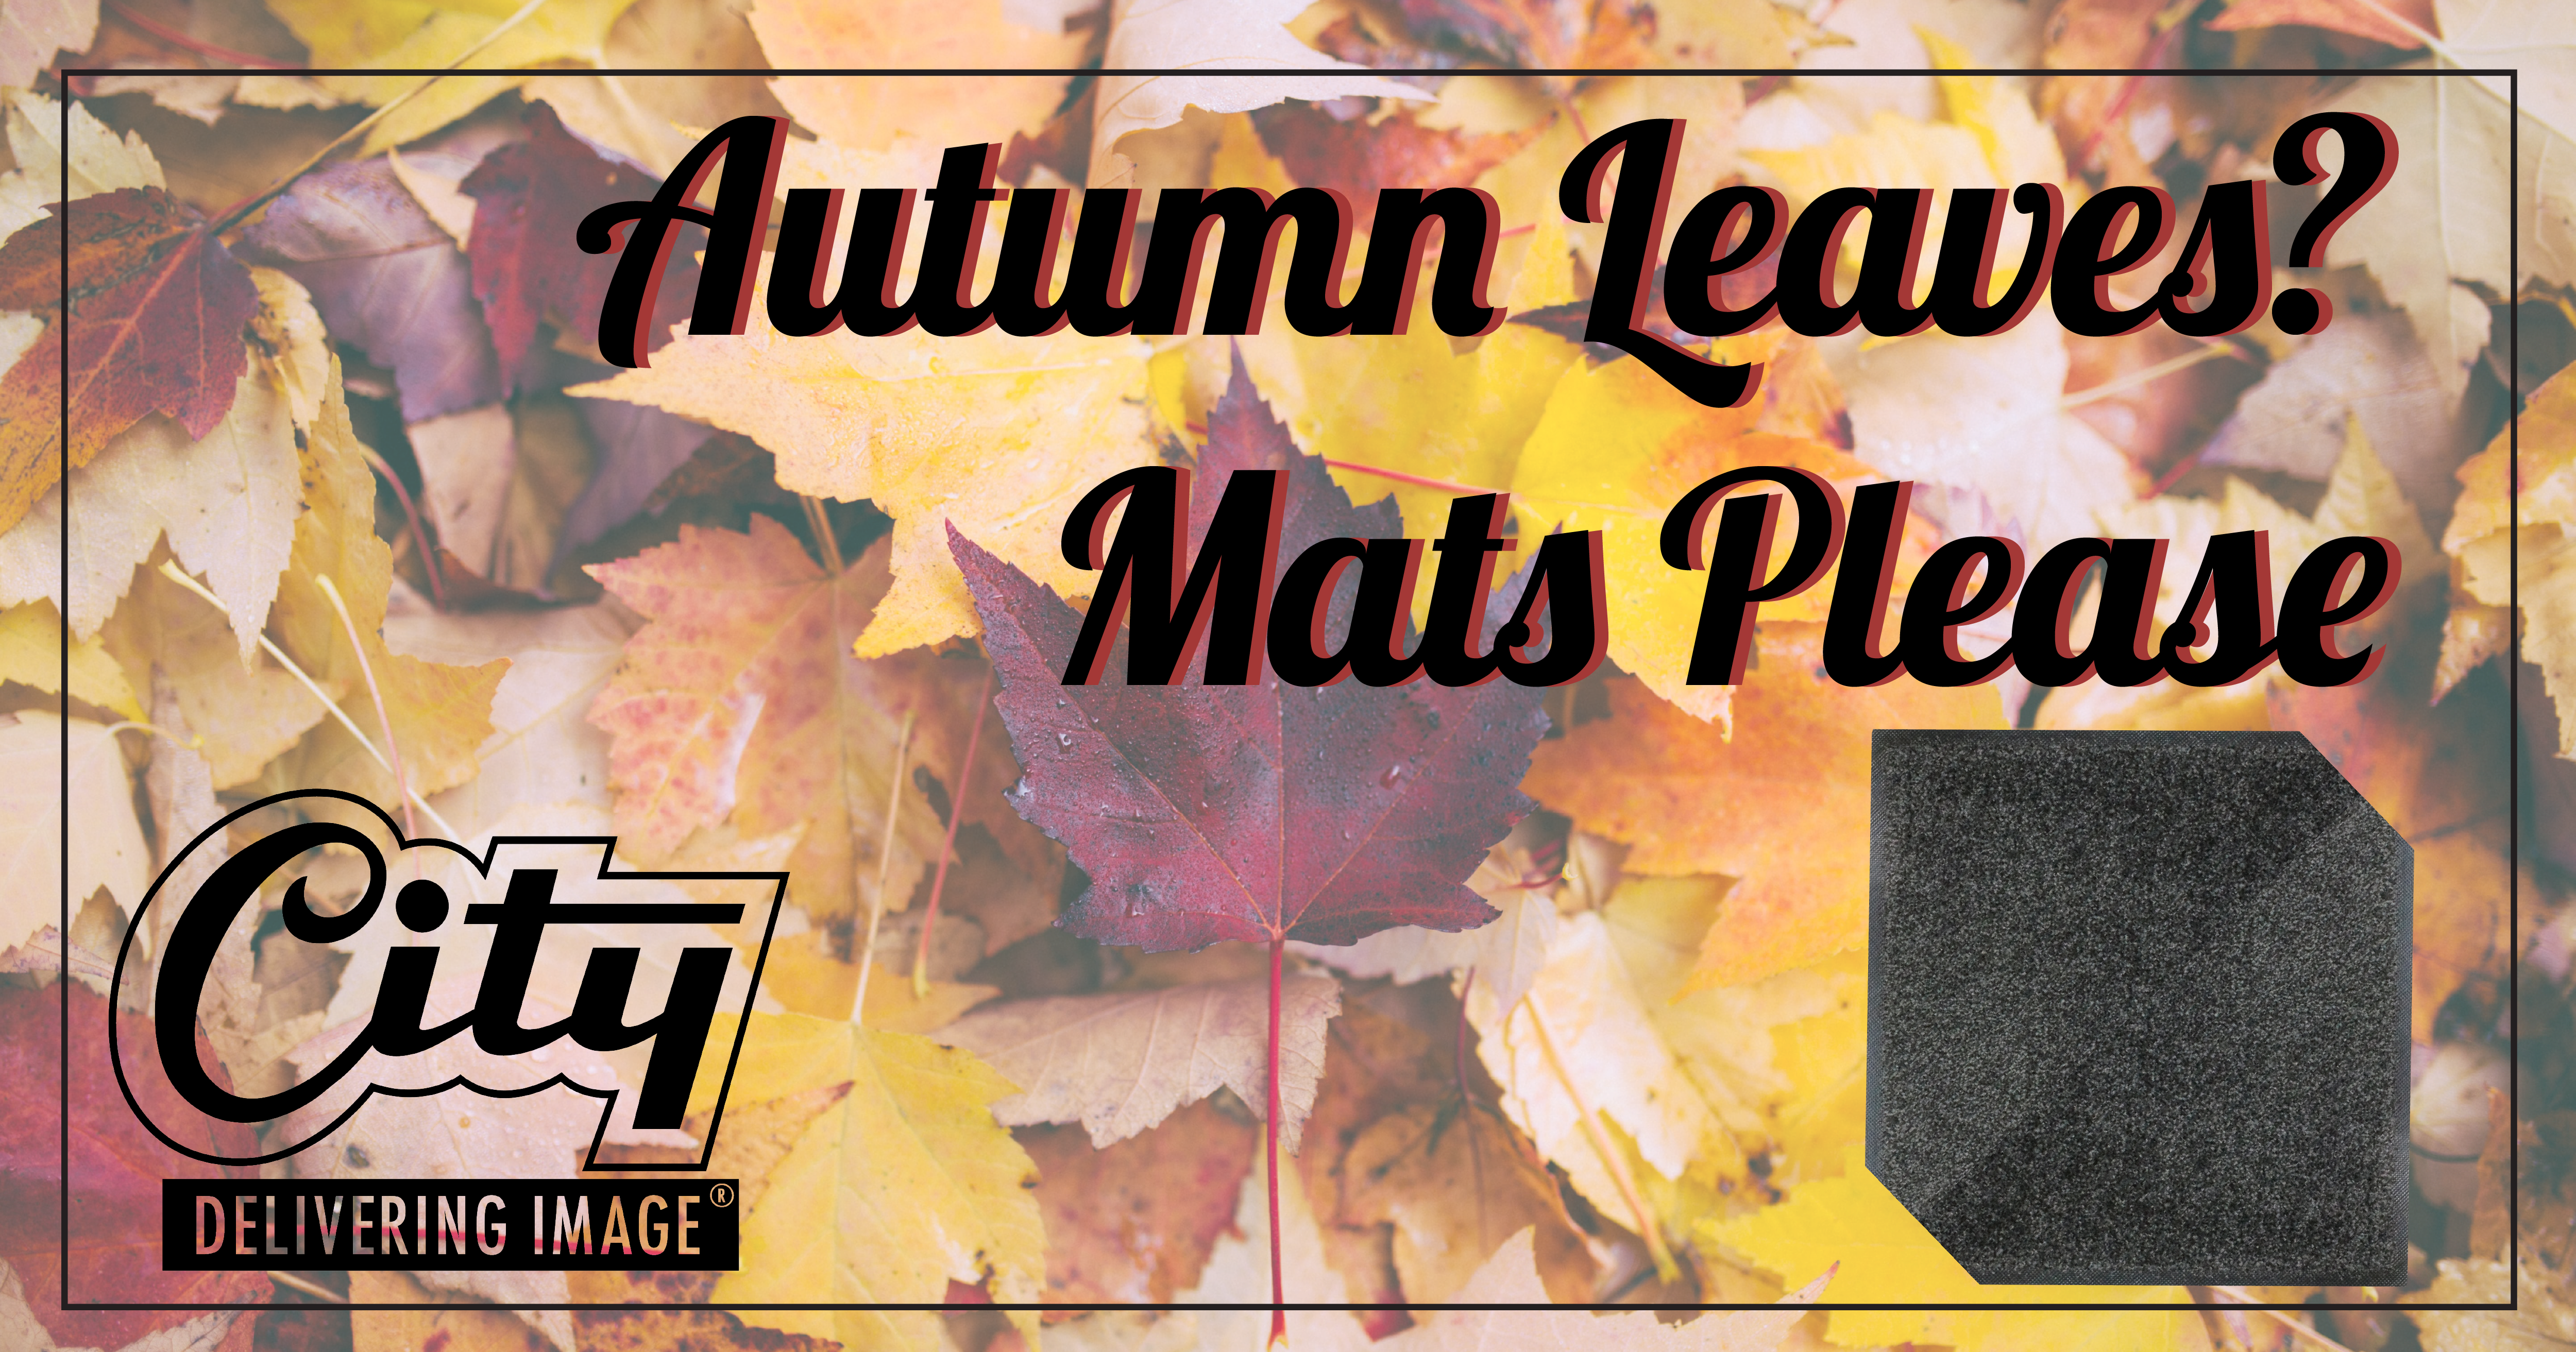 Floor Mats for Autumn Leaves